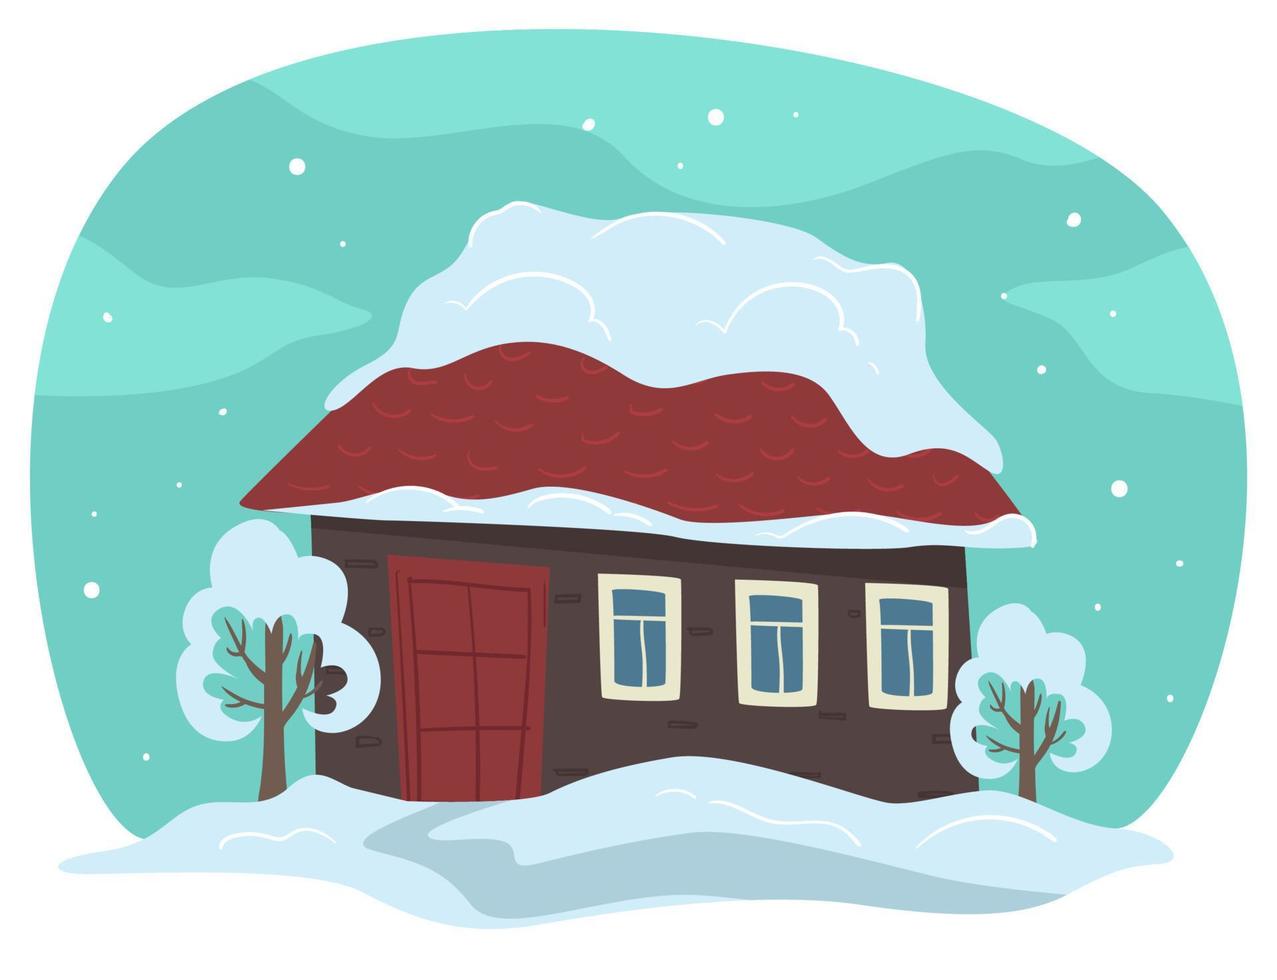 huis op het dak gedekt met sneeuw, winter landelijk landschap vector